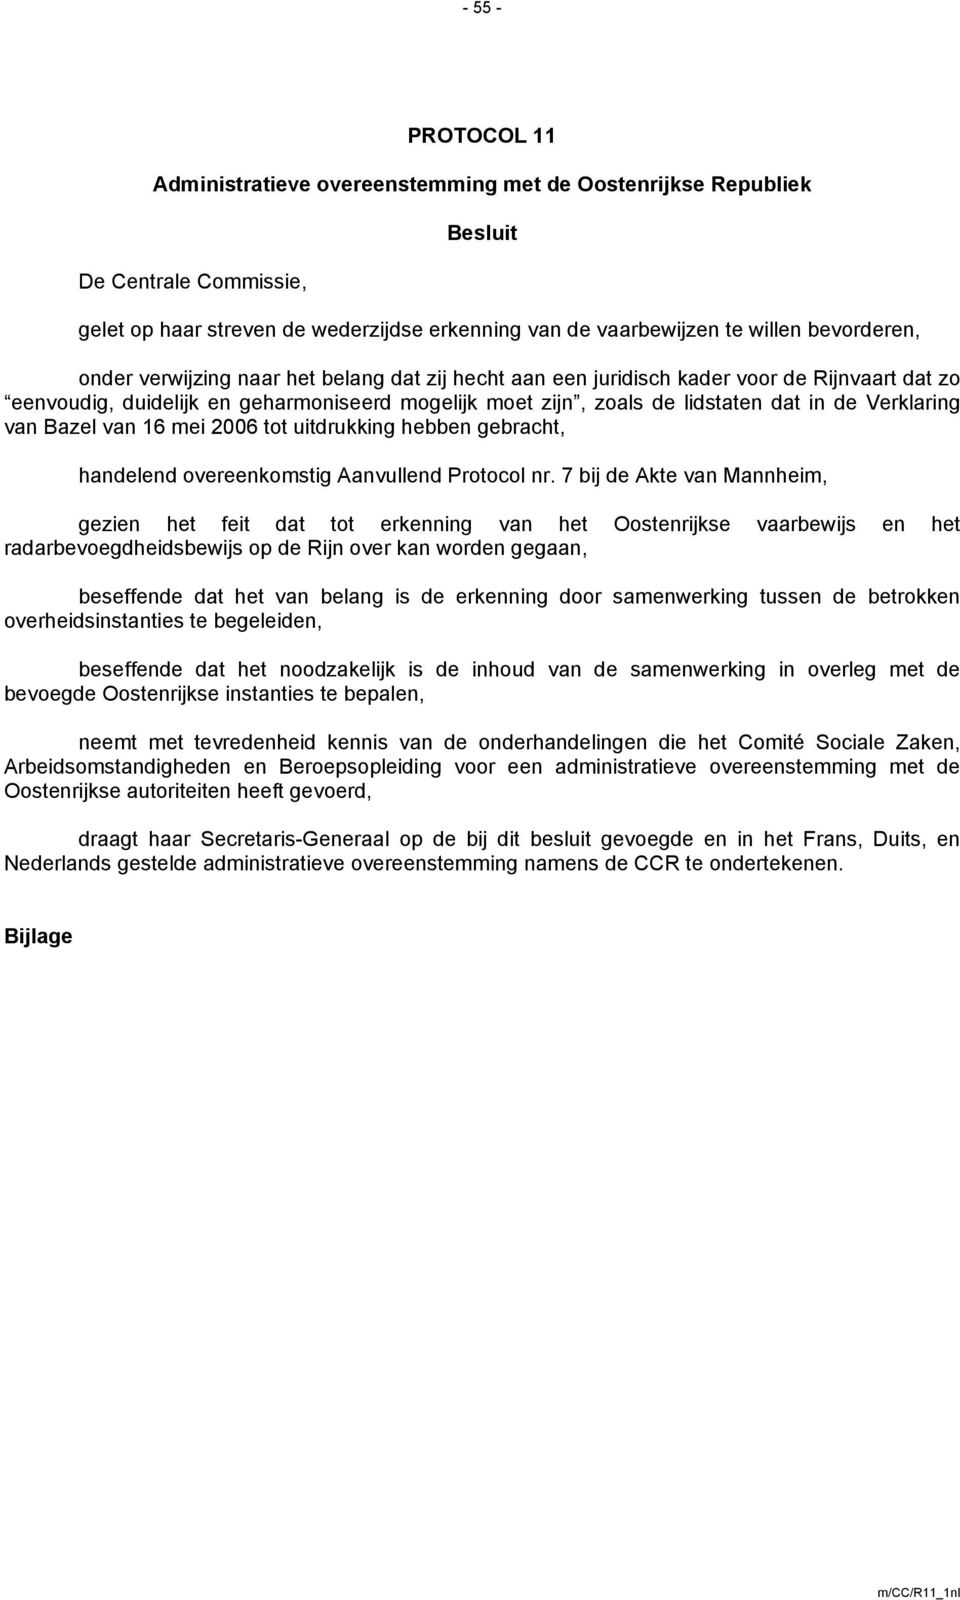 Verklaring van Bazel van 16 mei 2006 tot uitdrukking hebben gebracht, handelend overeenkomstig Aanvullend Protocol nr.